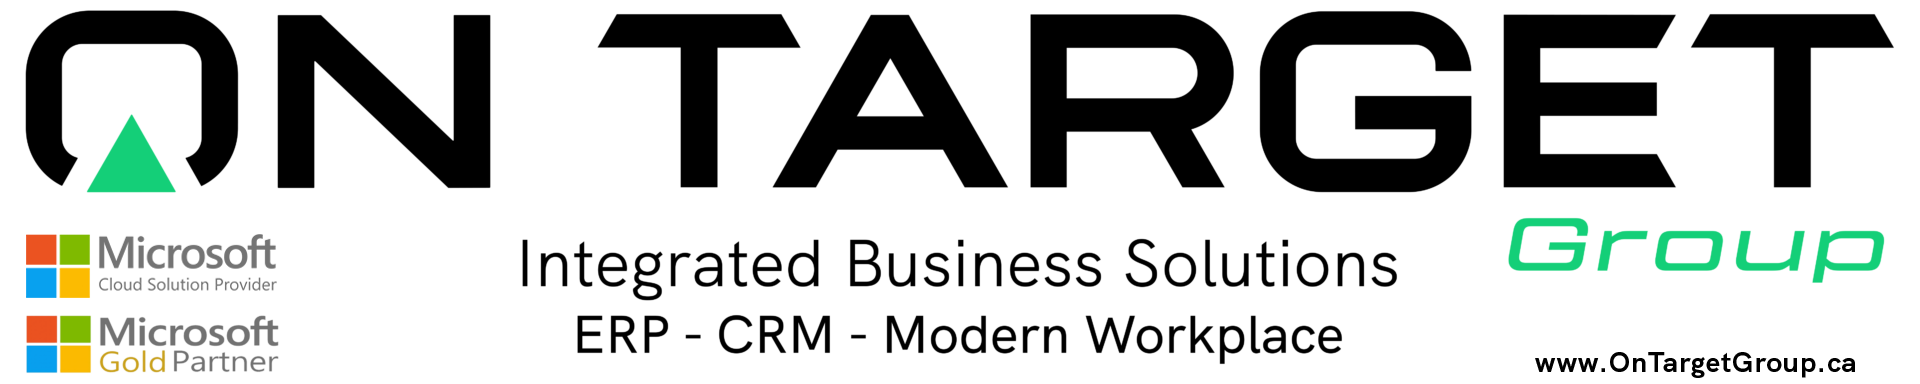 OnTarget Group logo